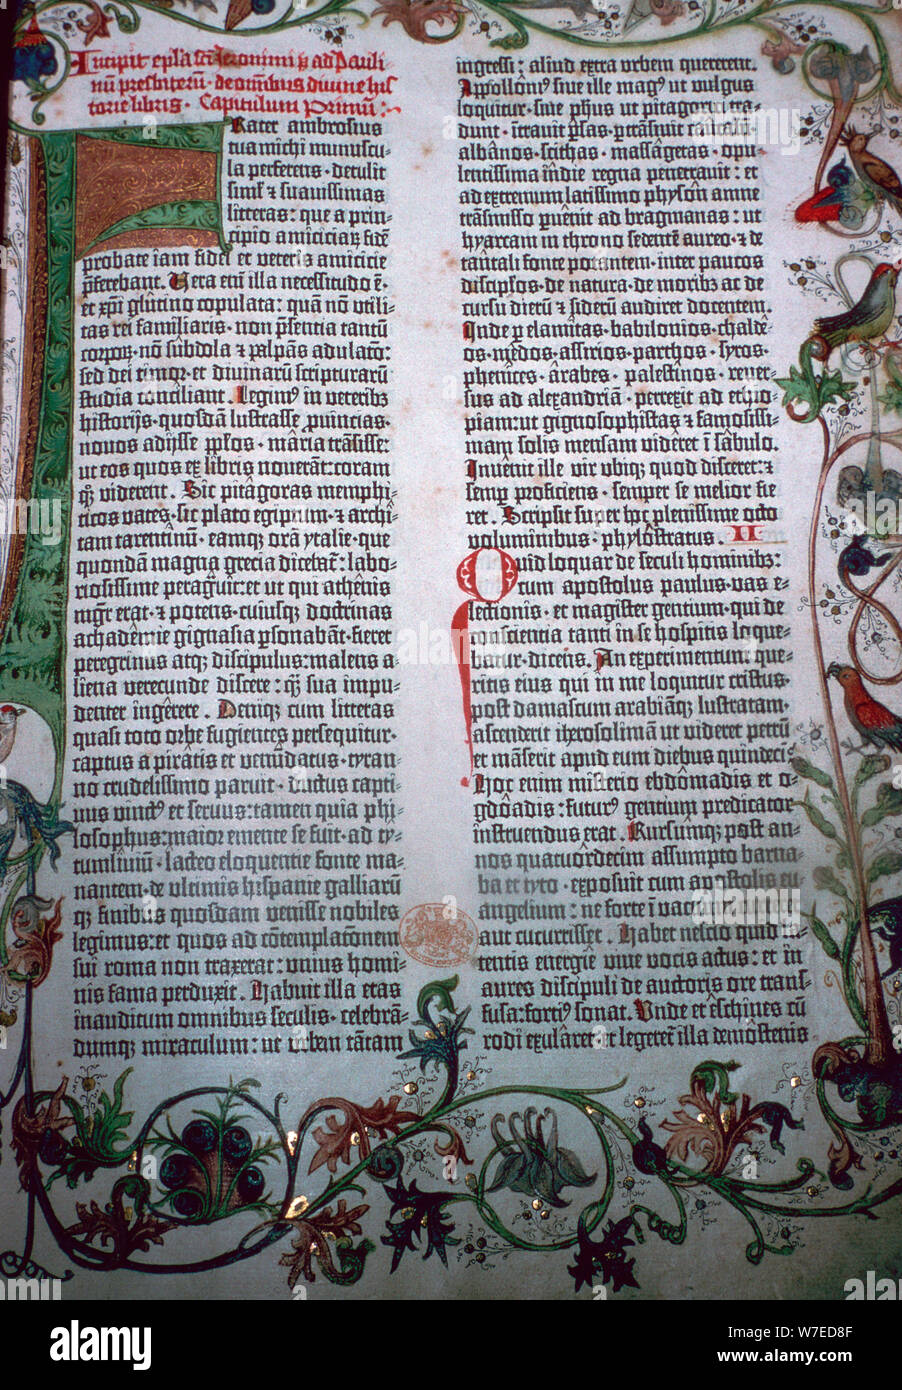 Una página de la Biblia de Gutenberg, del siglo XV. Artista: Johannes Gutenberg Foto de stock